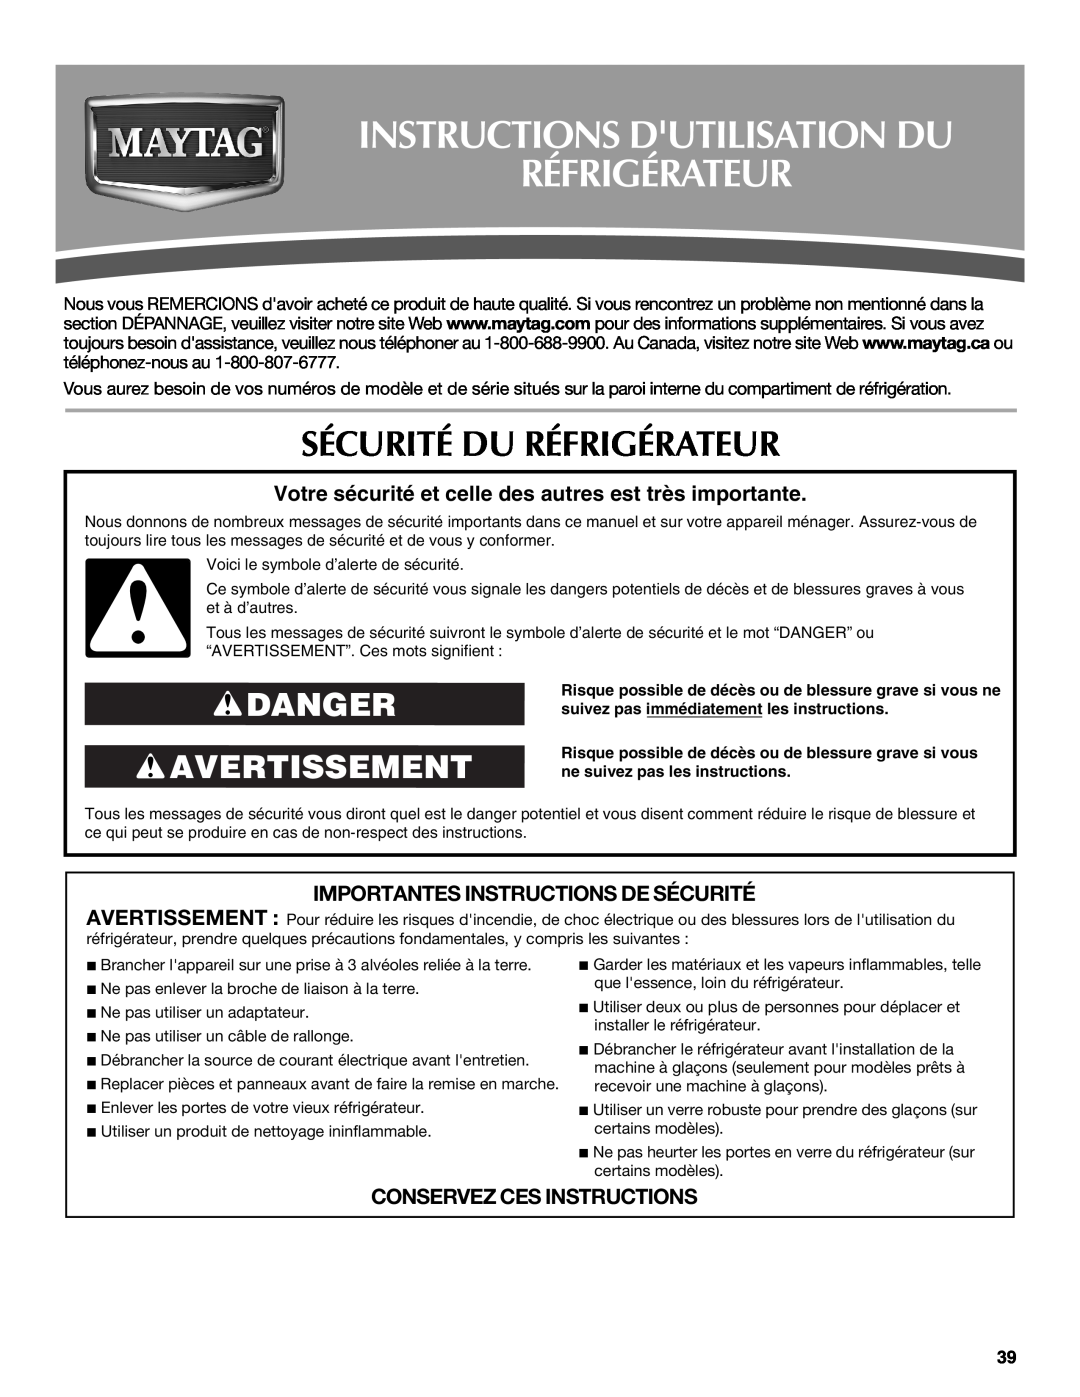 Maytag W10321481A Instructions Dutilisation Du Réfrigérateur, Sécurité Du Réfrigérateur, Danger Avertissement 